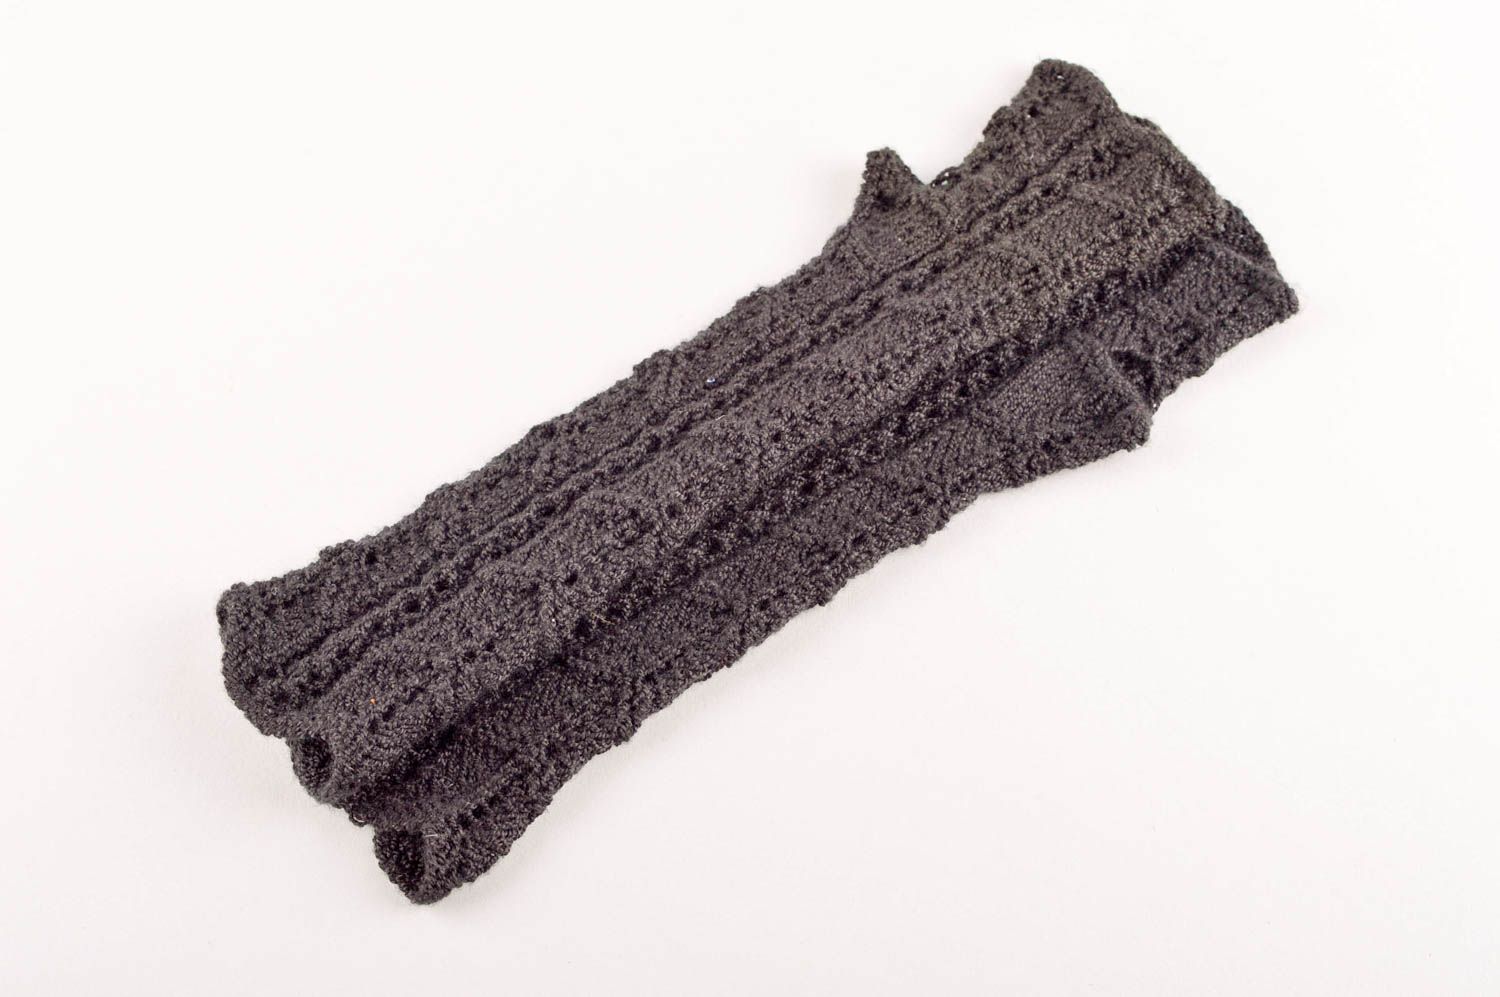 Beautiful handmade crochet mittens warm mittens design winter outfit gift ideas photo 5